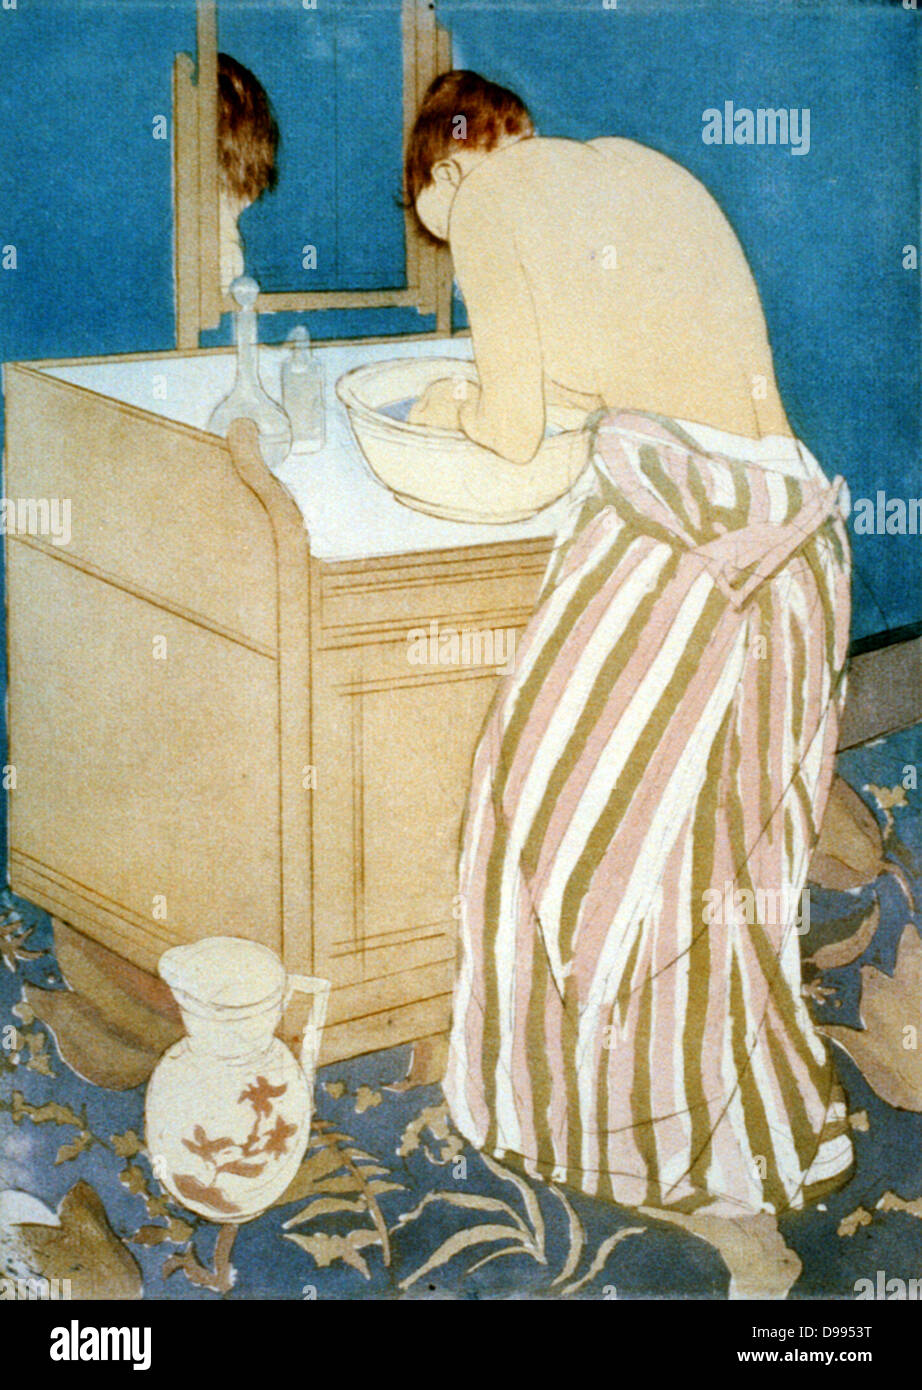 Frau Waschen', 1890-1891. Die kaltnadel und Aquatinta, die in Farbe gedruckt werden. Mary Cassatt (1844-1926), US-amerikanischer Maler und Grafiker, die ab 1866 vor allem in Frankreich lebte. Beeinflusst von japanischen Farbholzschnitten. Stockfoto